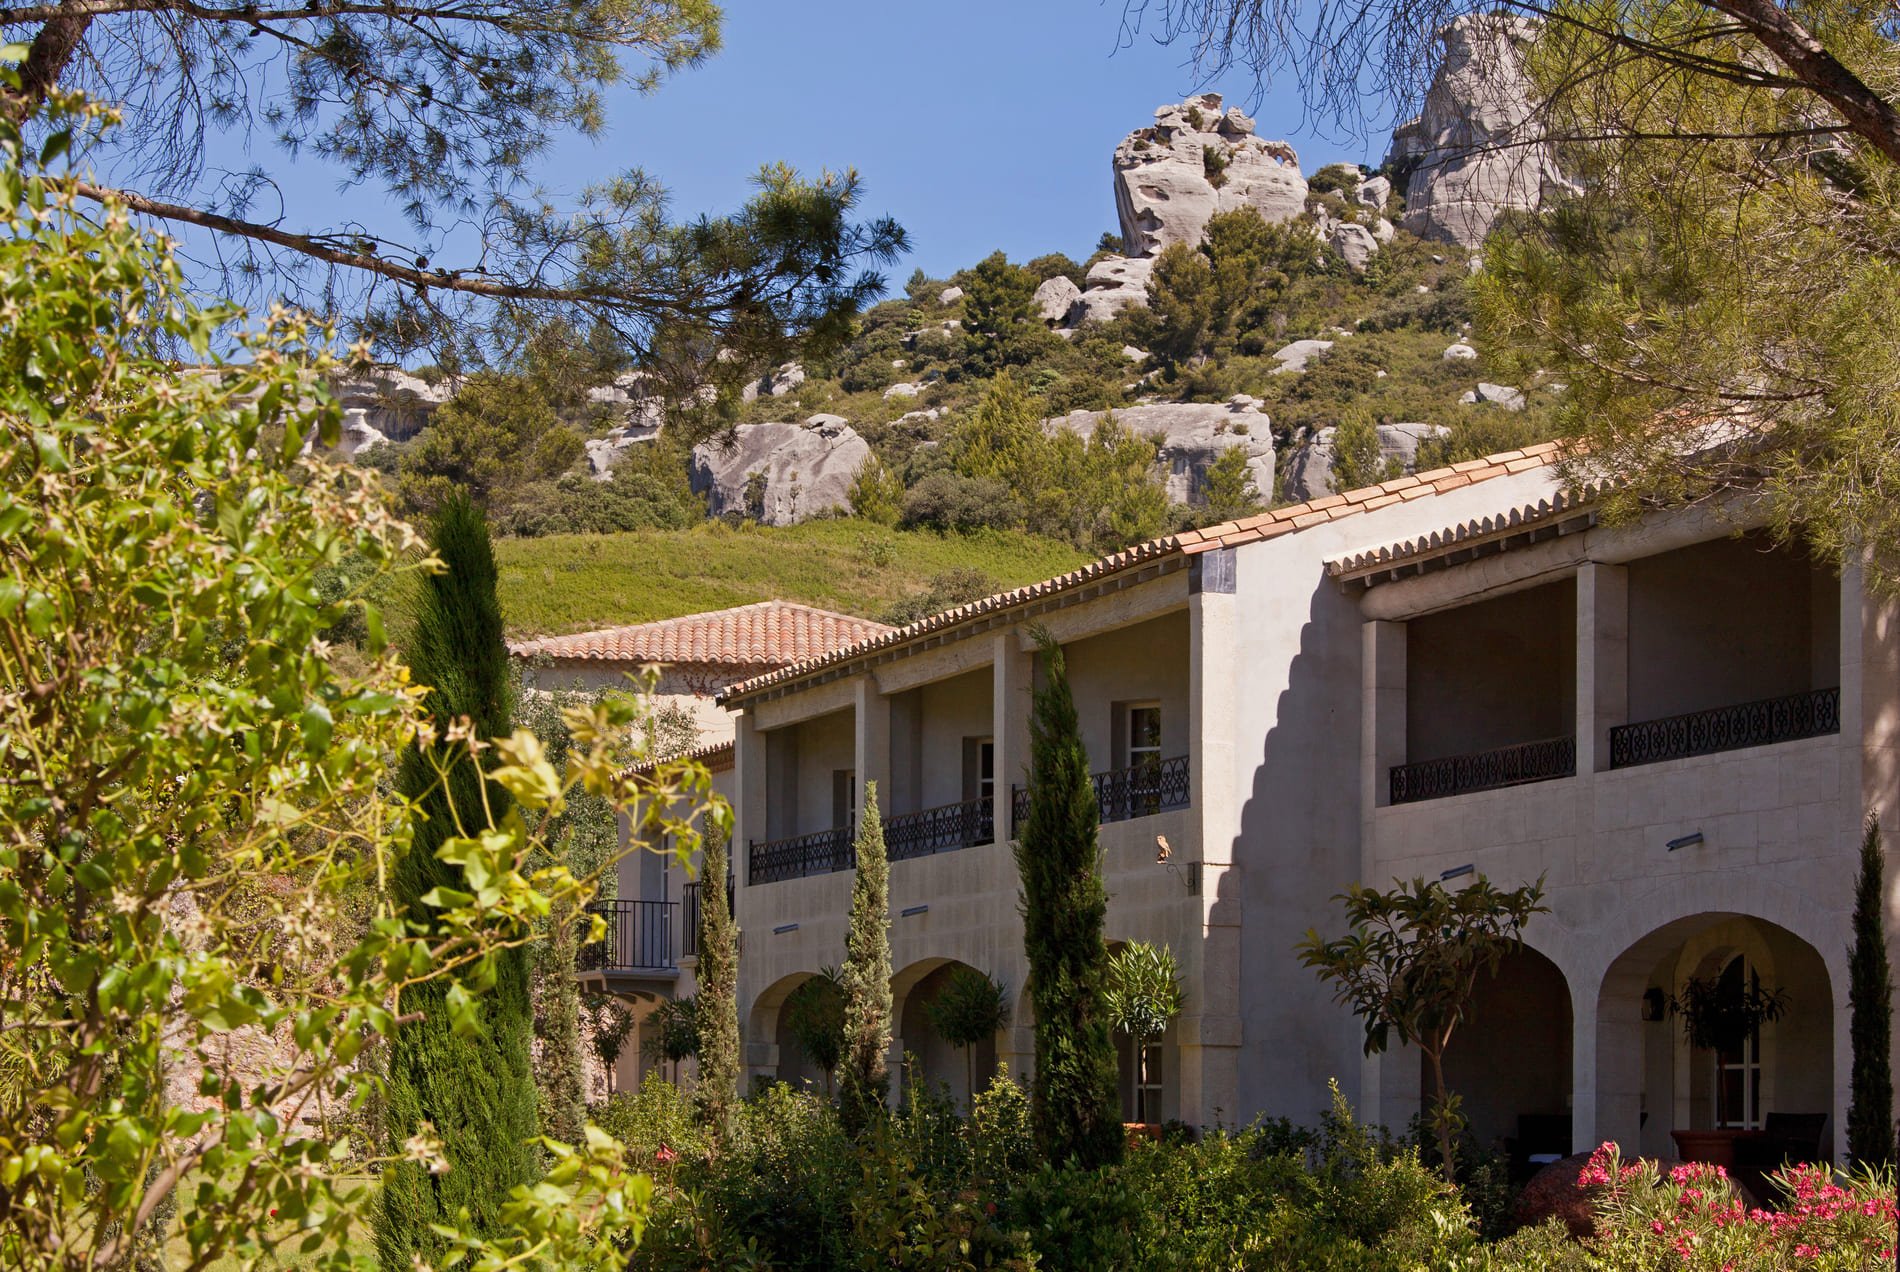 Luxury boutique hotel Benvengudo 4 stars Les Baux-de-Provence France garden